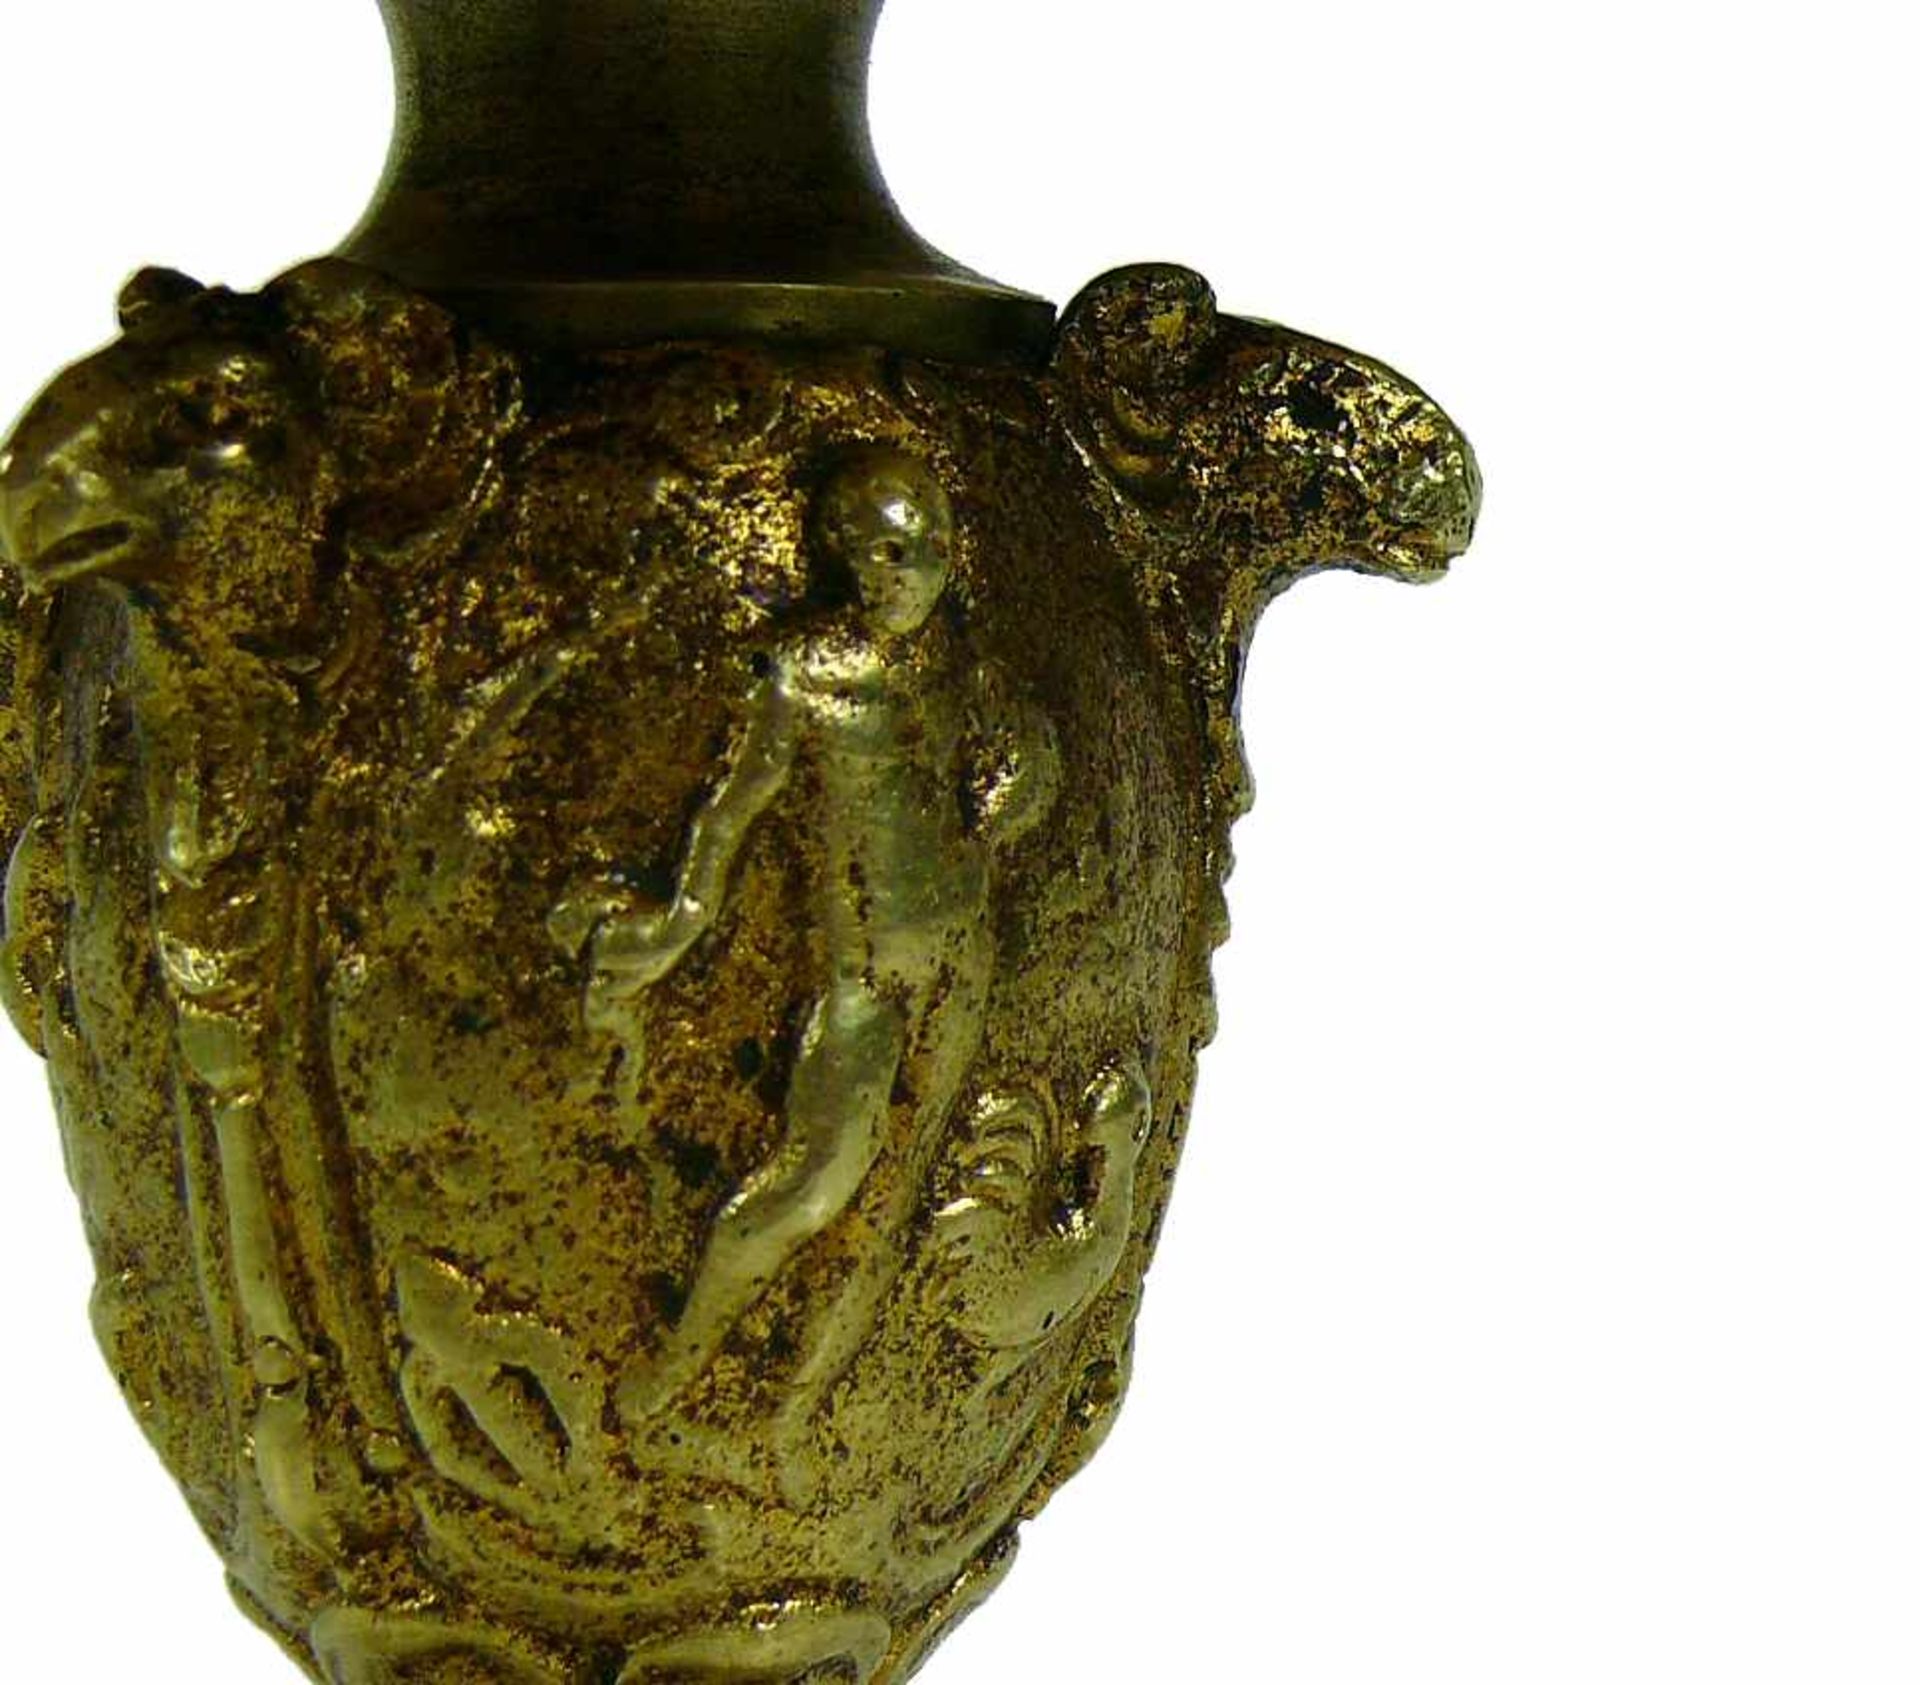 TazzaAufsatz und Schale in Messing mit figürlichem Relief; H: 16 cm; D: 17,5 cm - Bild 4 aus 4